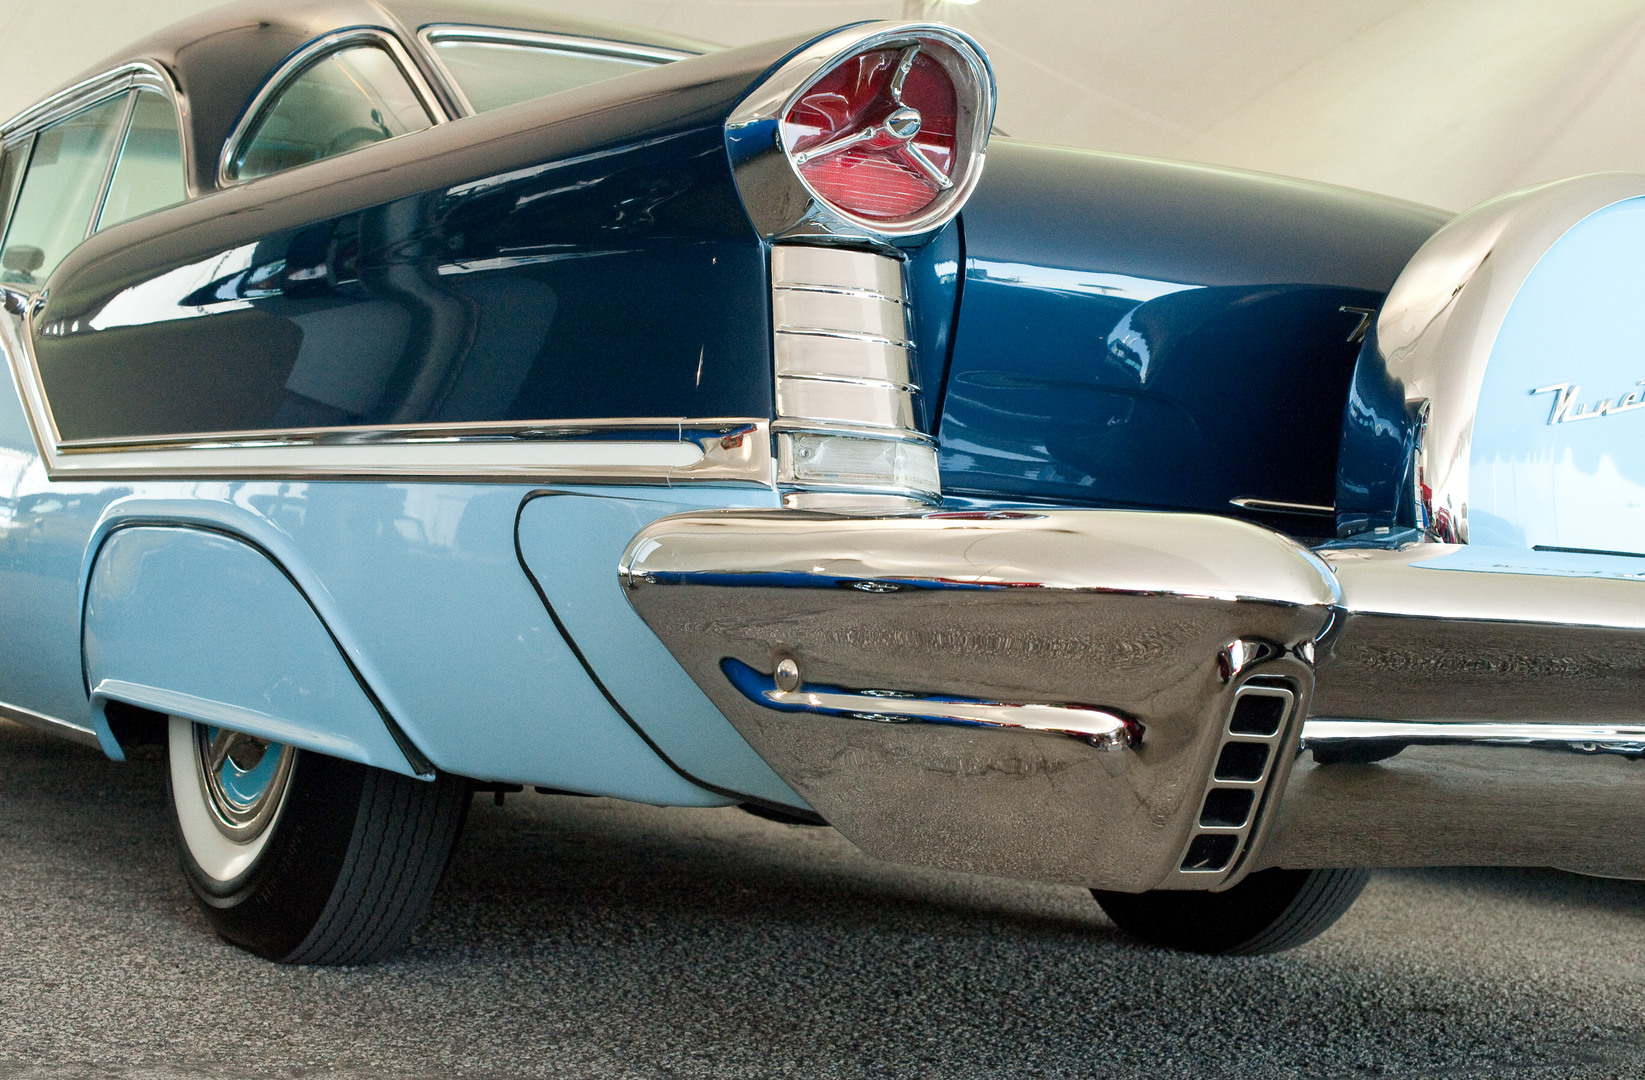 1957 Oldsmobile 98, Toit rigide 2 portes â€” Fotopedia. Numéro de lot: 354.1